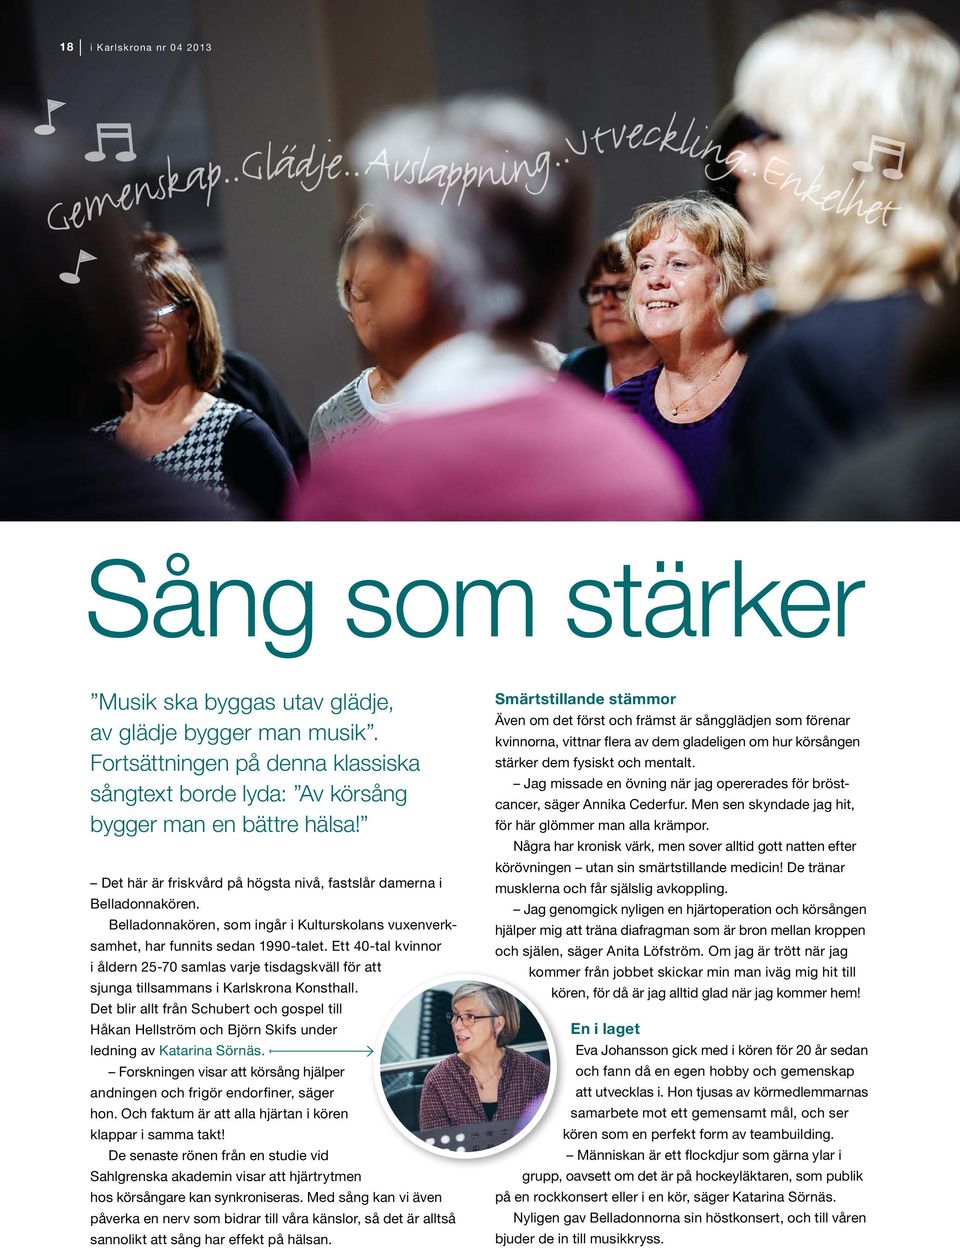 Belladonnakören, som ingår i Kulturskolans vuxenverksamhet, har funnits sedan 1990-talet. Ett 40-tal kvinnor i åldern 25-70 samlas varje tisdagskväll för att sjunga tillsammans i Karlskrona Konsthall.